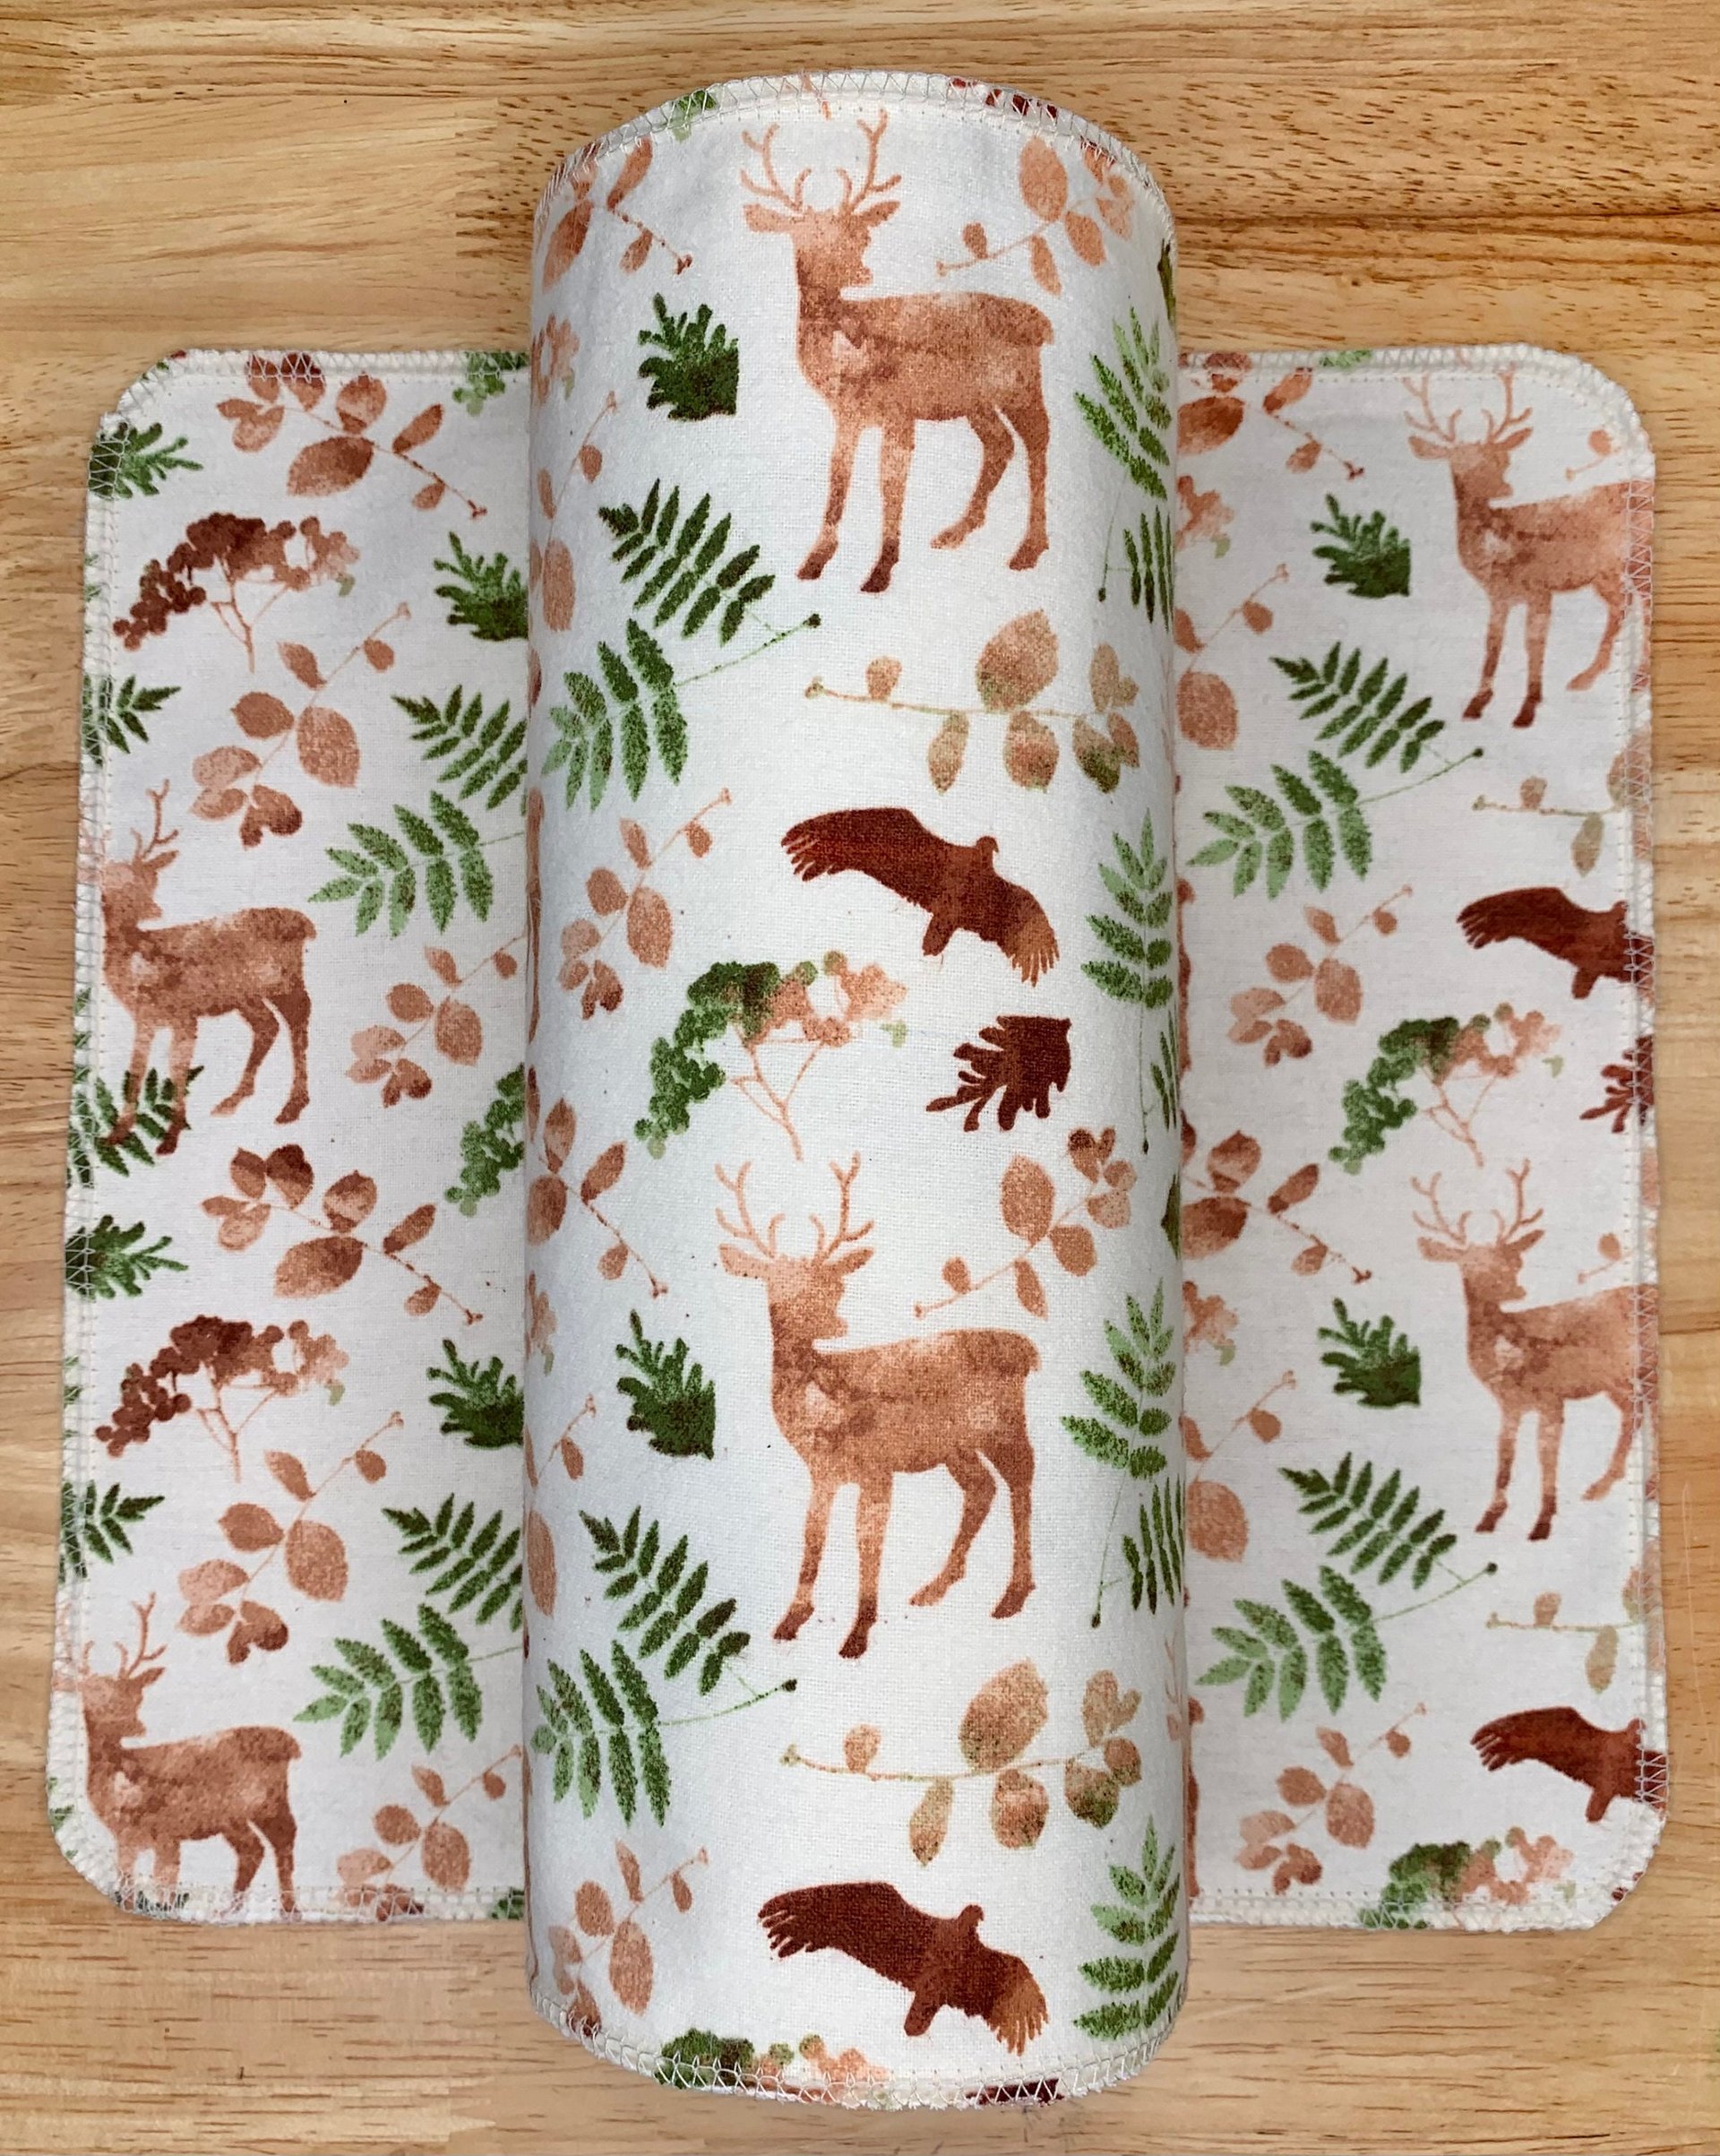 Wildlife & Ferns Paperless Towels || Unpaper Towels || Zero-Waste Kitchen